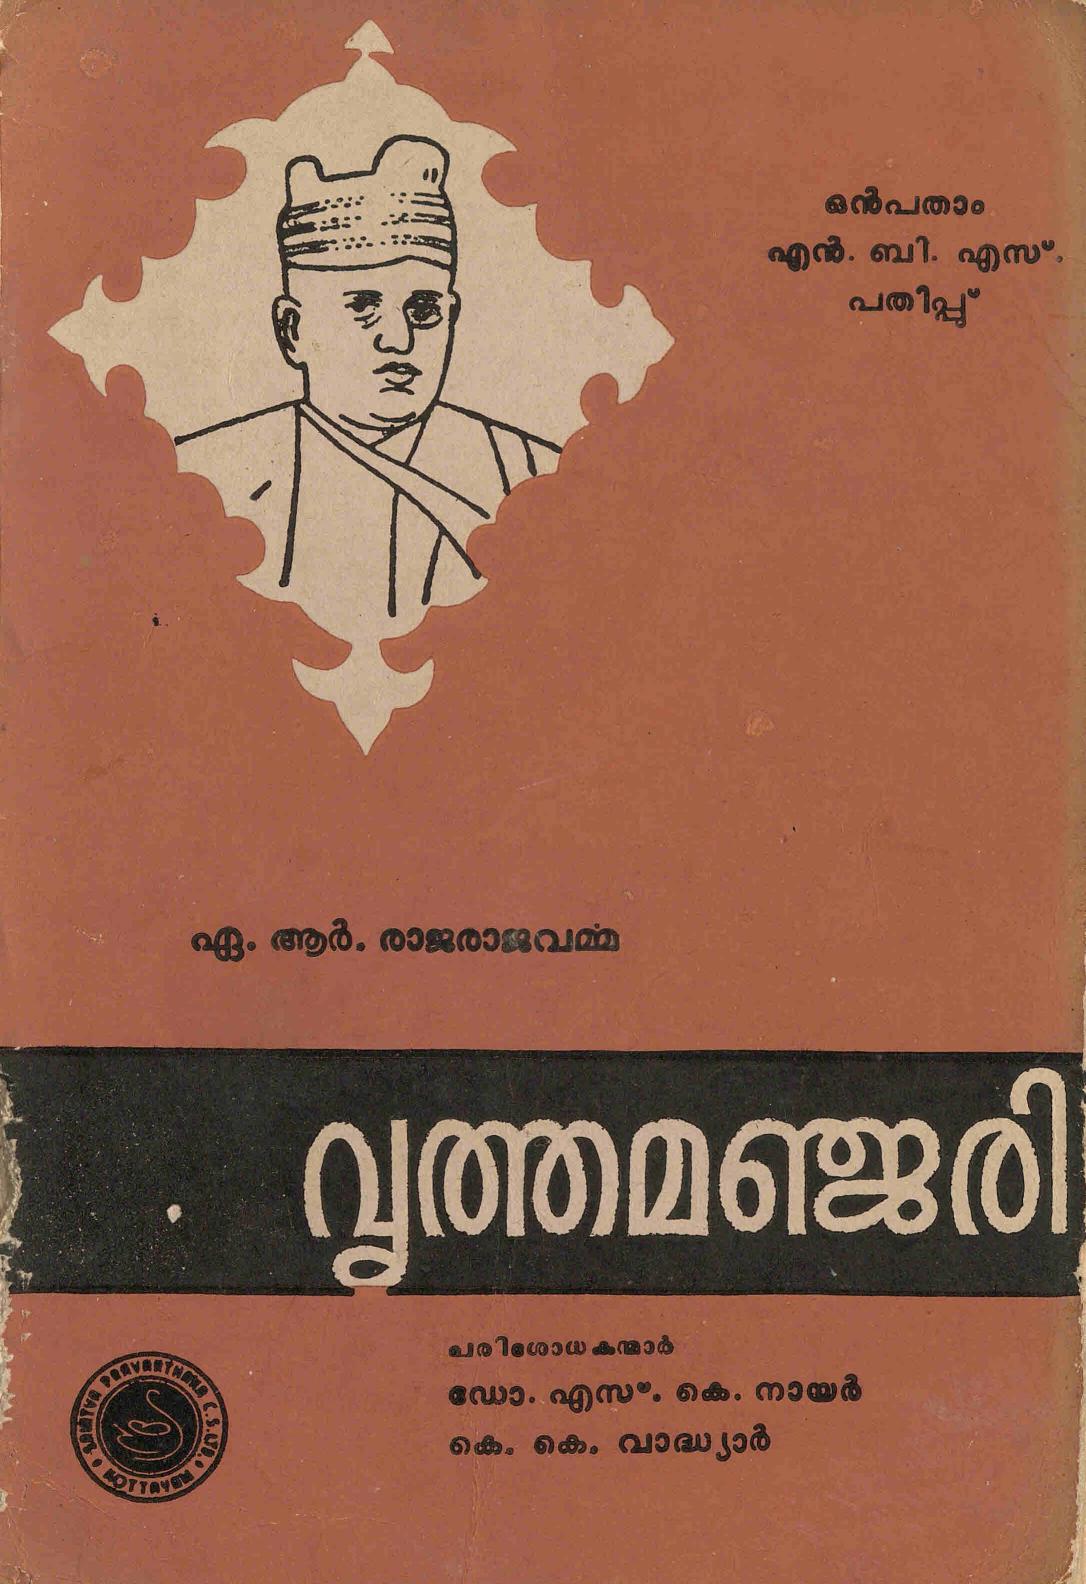 1982 - വൃത്തമഞ്ജരി - എ. ആർ. രാജരാജവർമ്മ